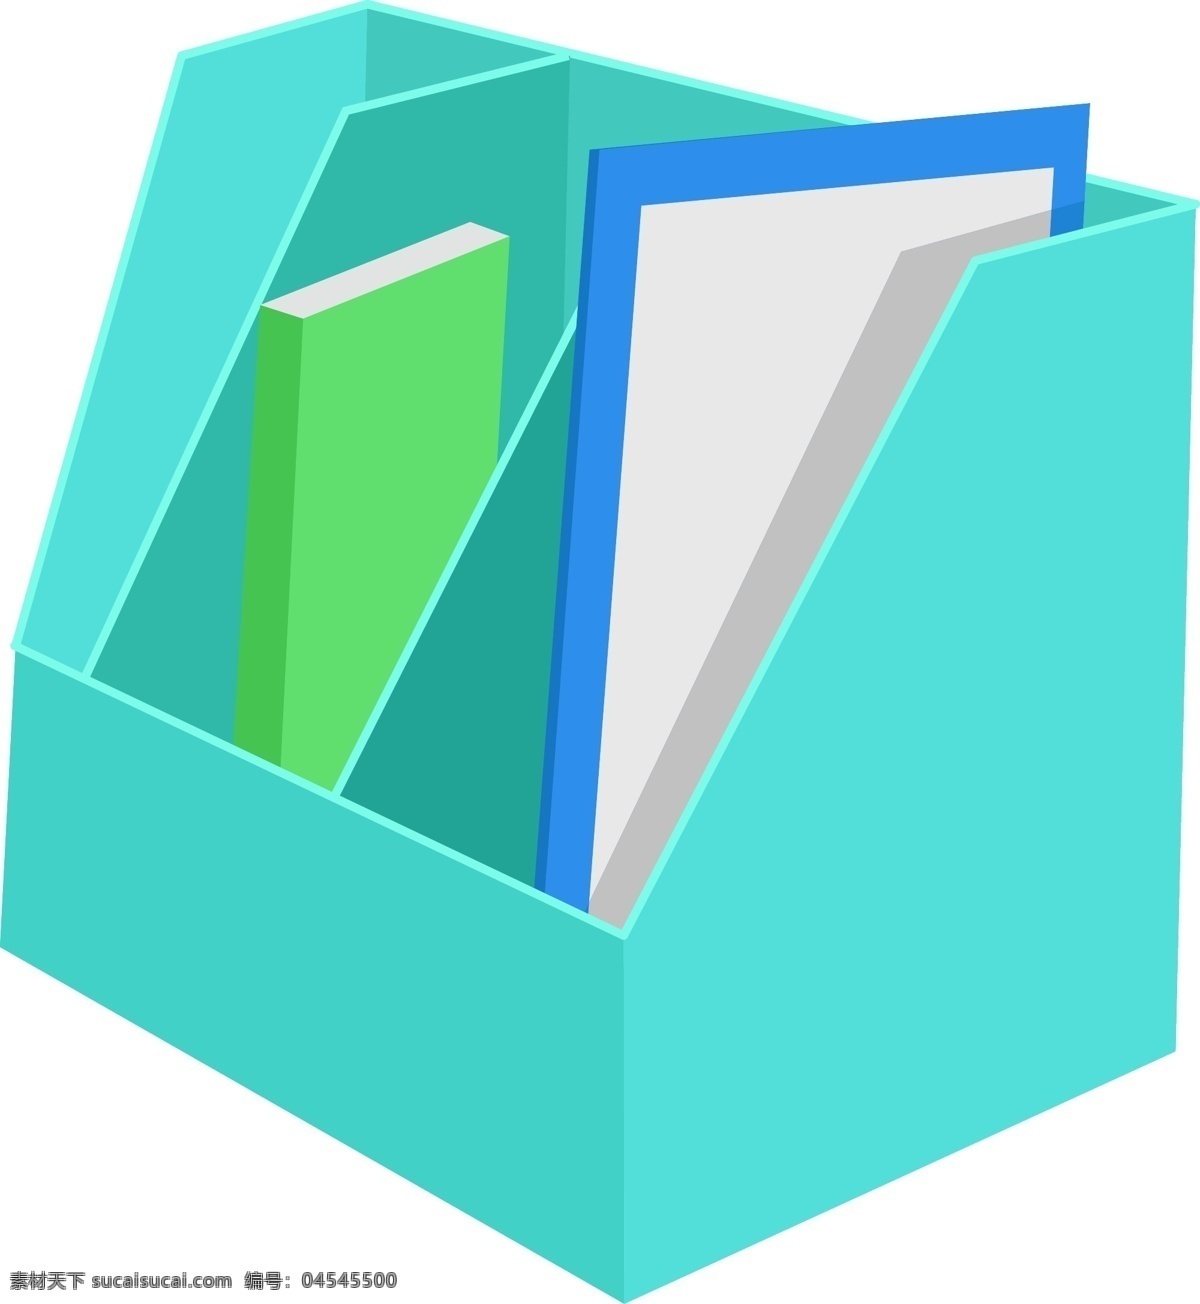 办公用品 文件 插画 绿色的文件夹 卡通插画 上班用品 办公用具 办公器具 绿色的书本